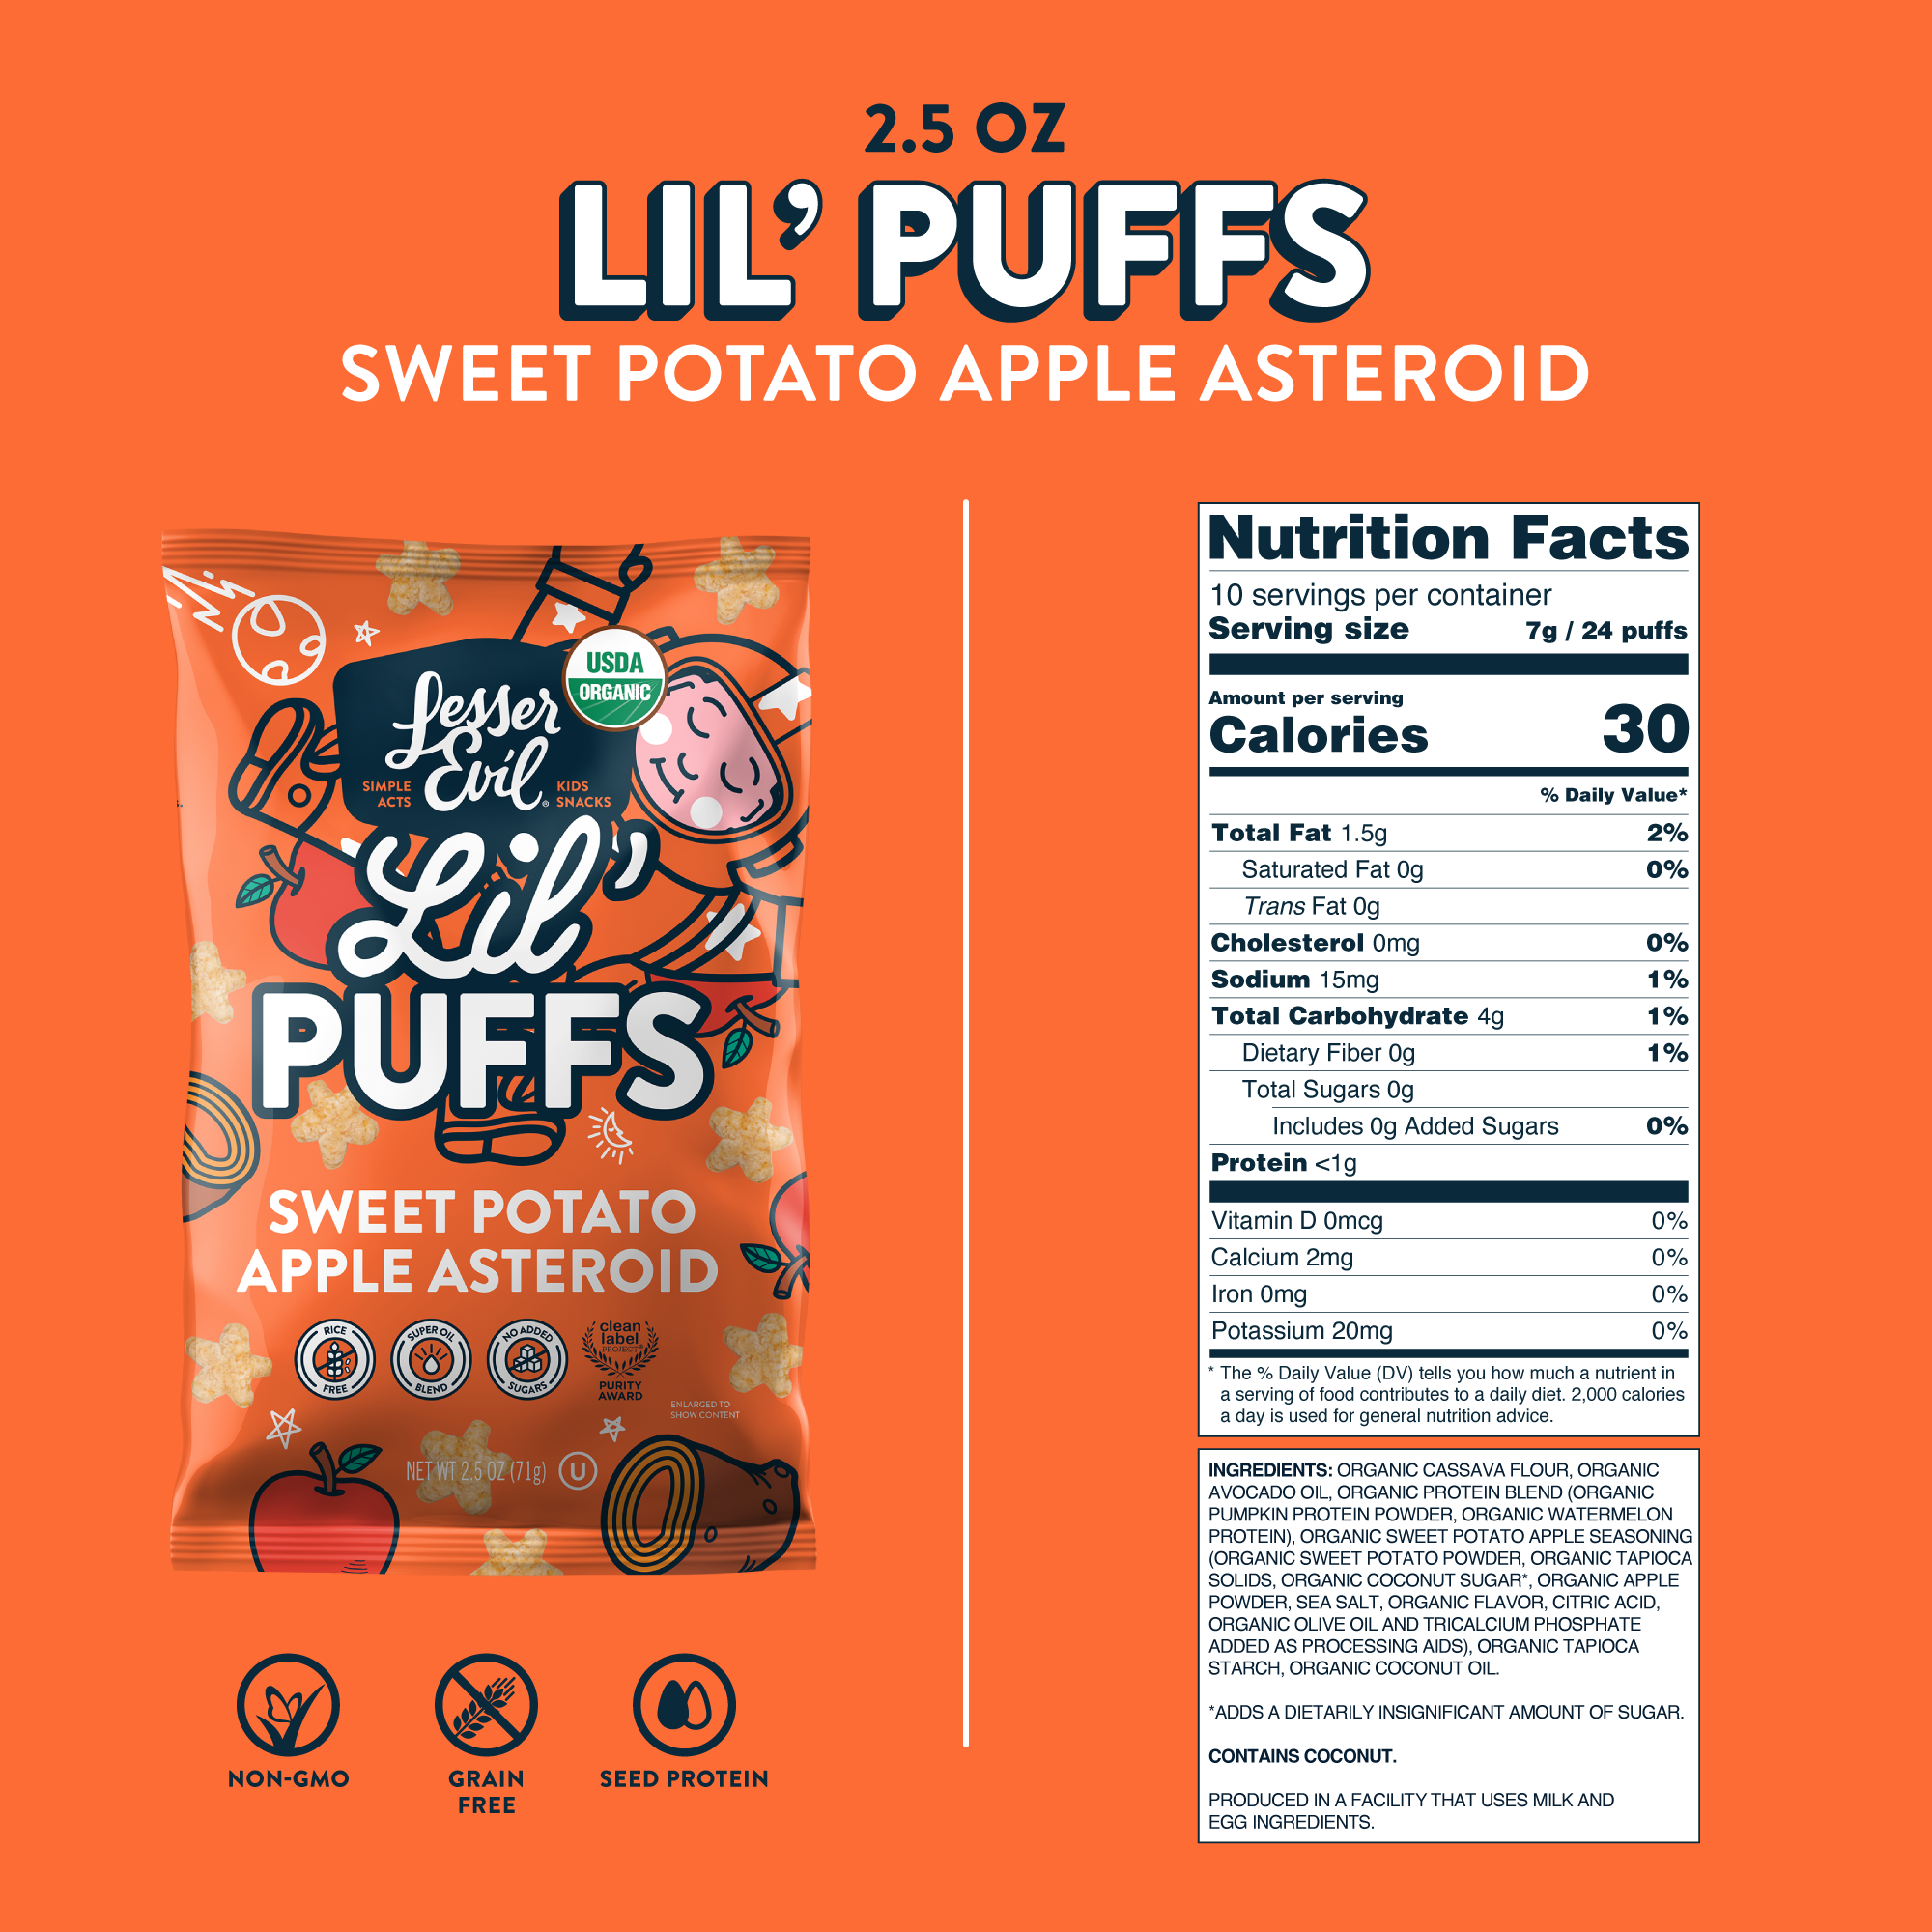 Sweet Potato Apple Asteroid